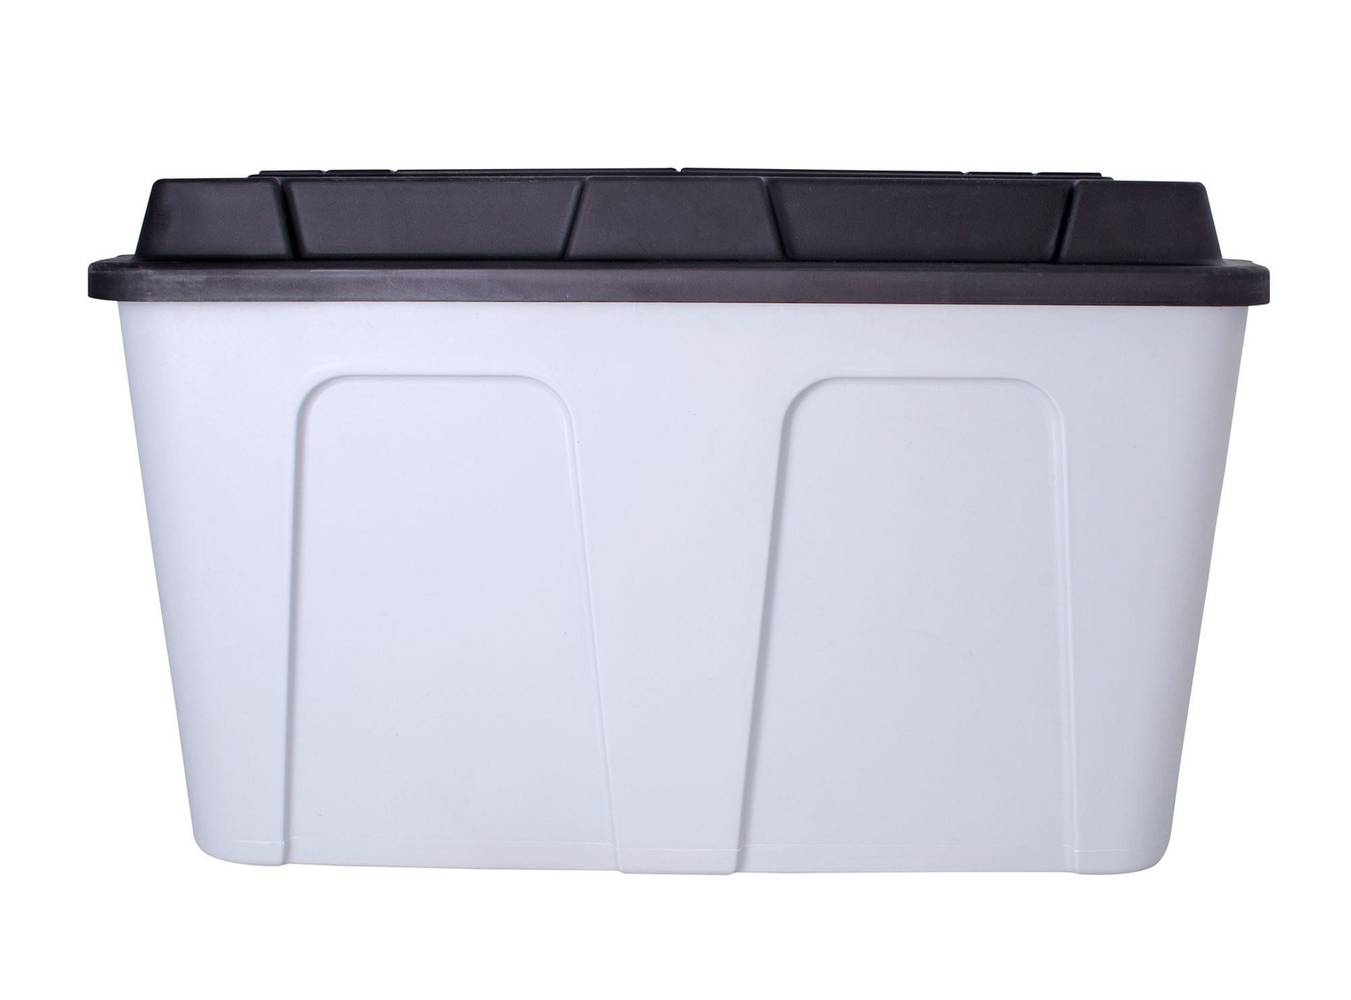 Innovaplast caja organizadora gris negro (capacidad 140 l)